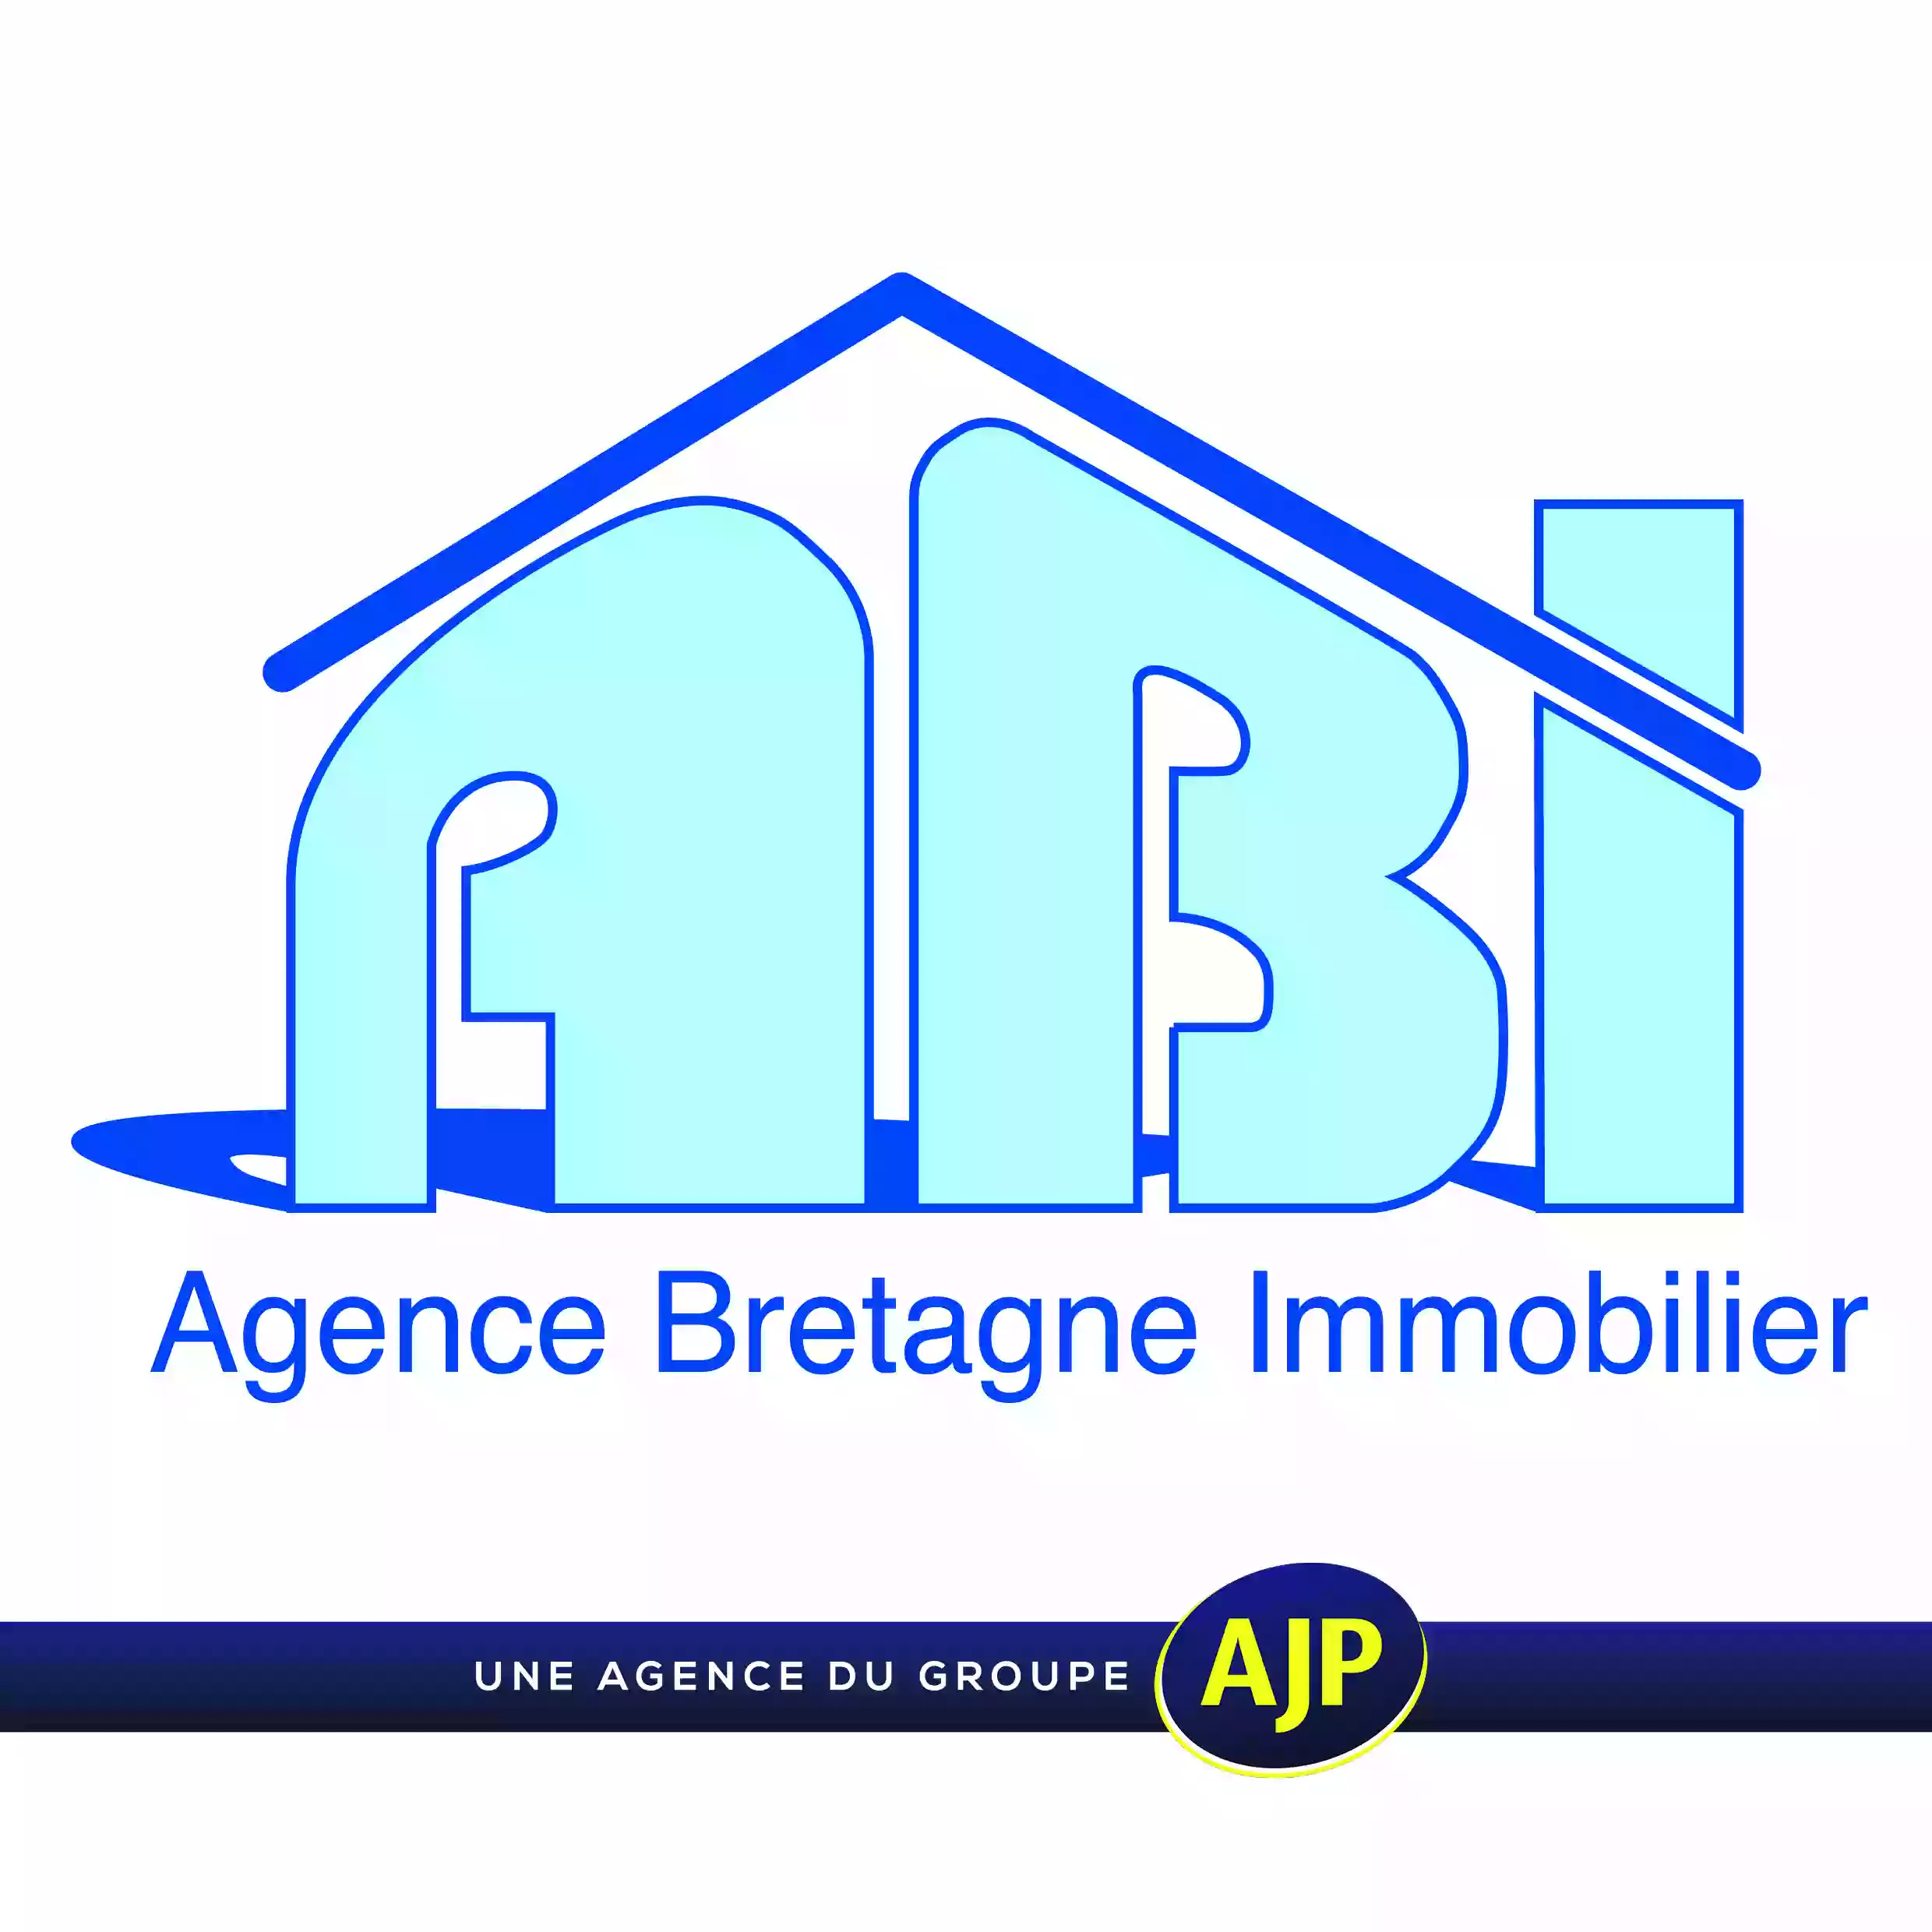 Agence Bretagne Immobilier